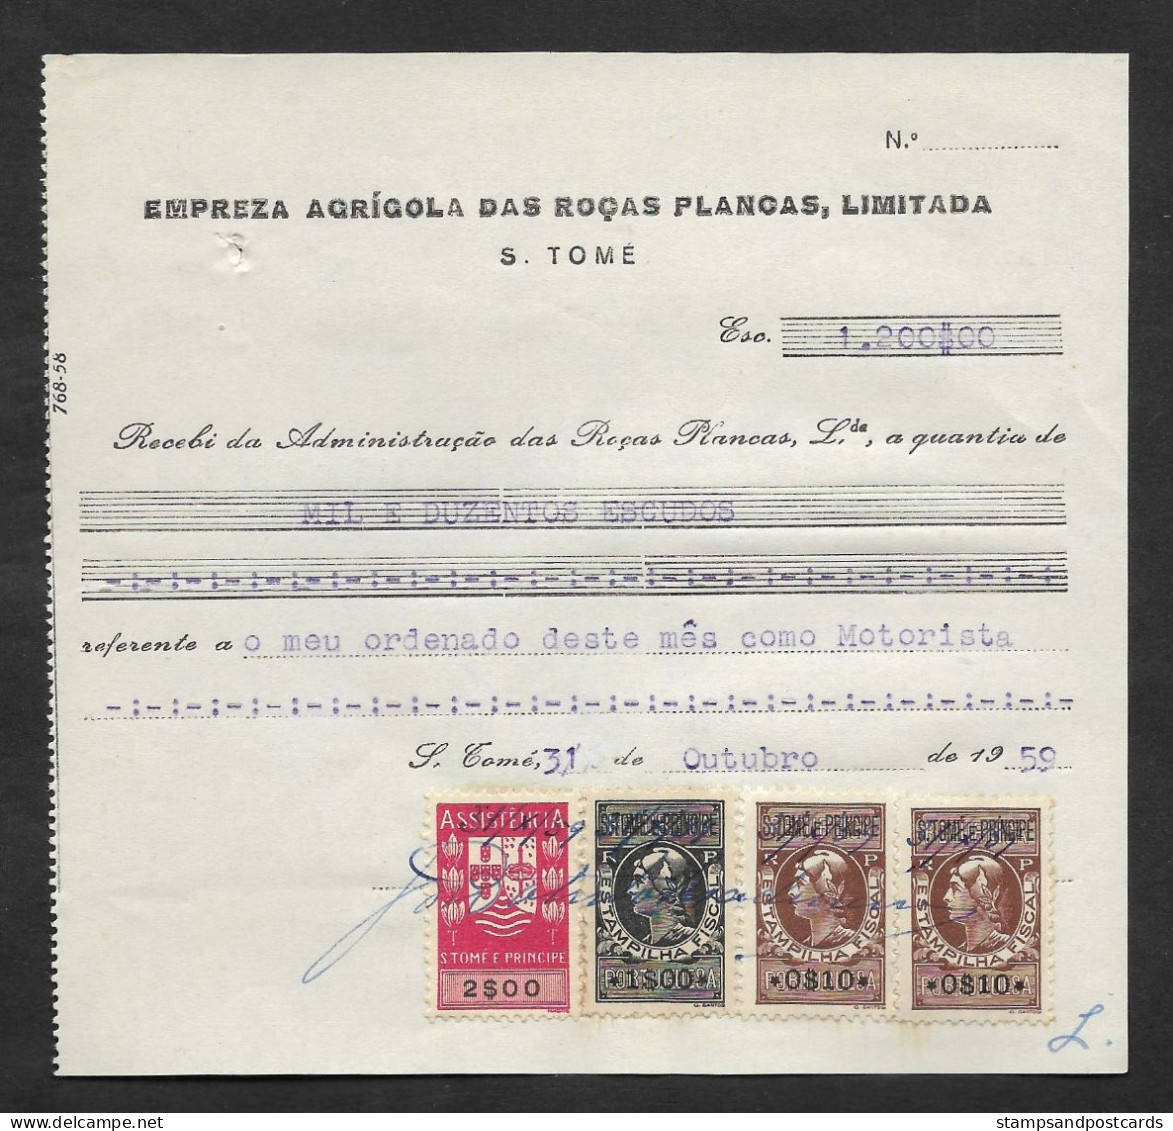 Portugal Sao Tome Et Principe Timbre Fiscal 1959 Reçu Plantation Cacao Et Café Receipt W/ Revenue Stamp Cocoa And Coffee - Storia Postale